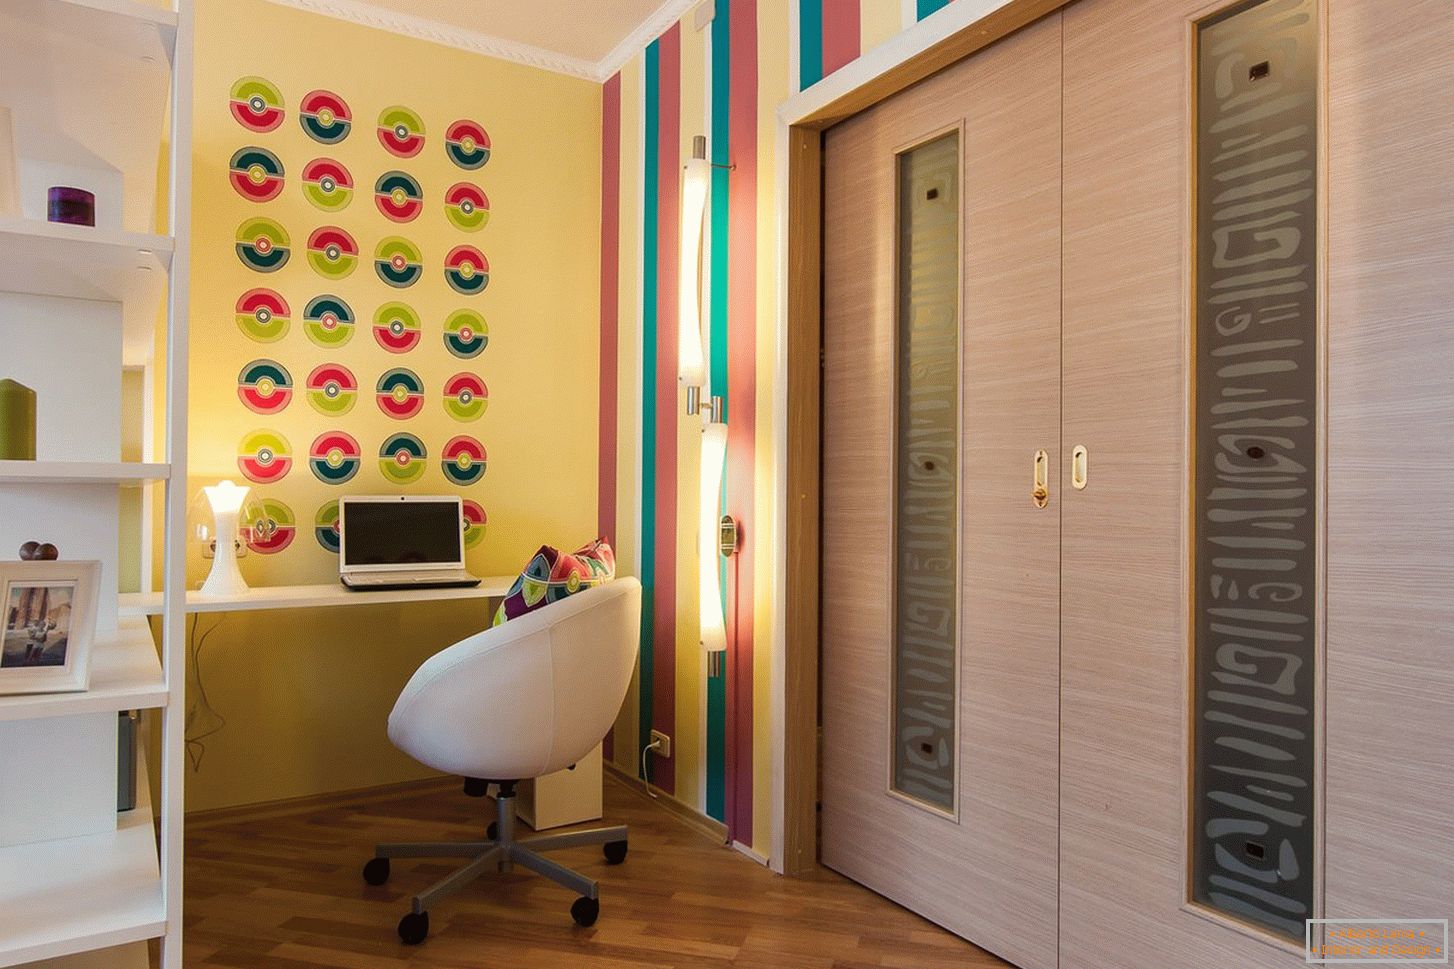 Colores brillantes en el diseño de la sala de estar